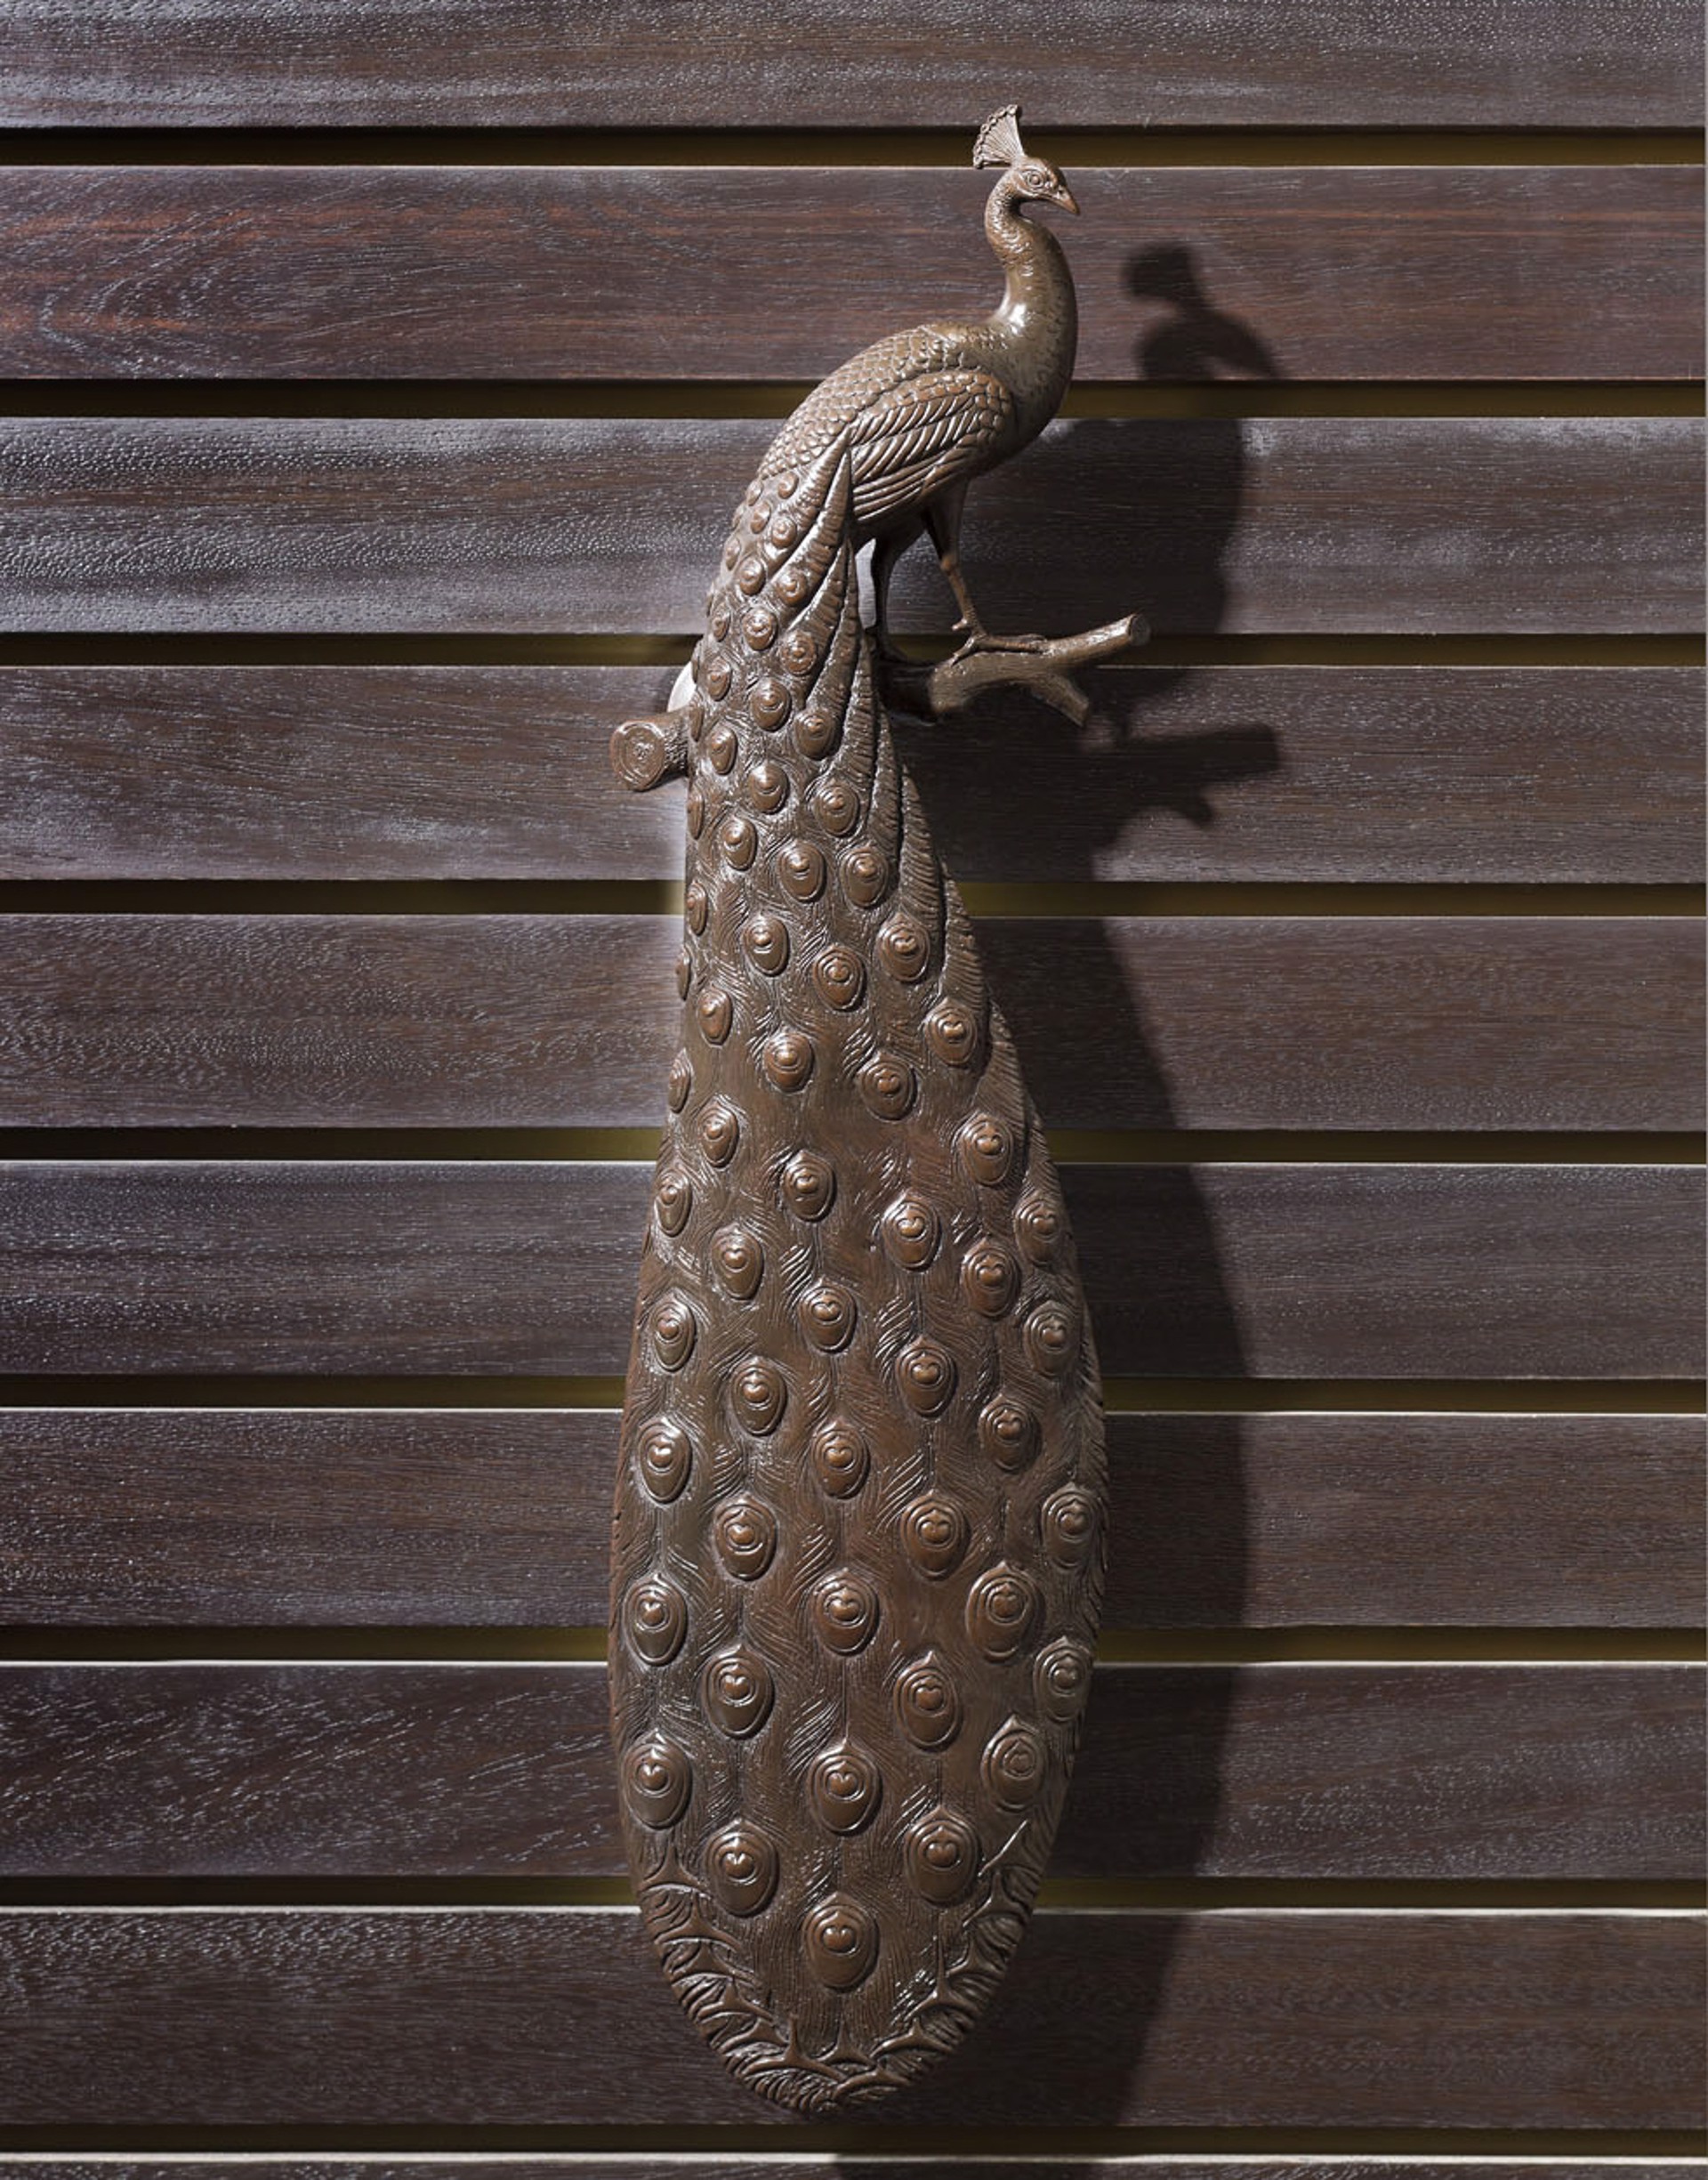 Peacock Handle by Sergio Bustamante (sculptor)